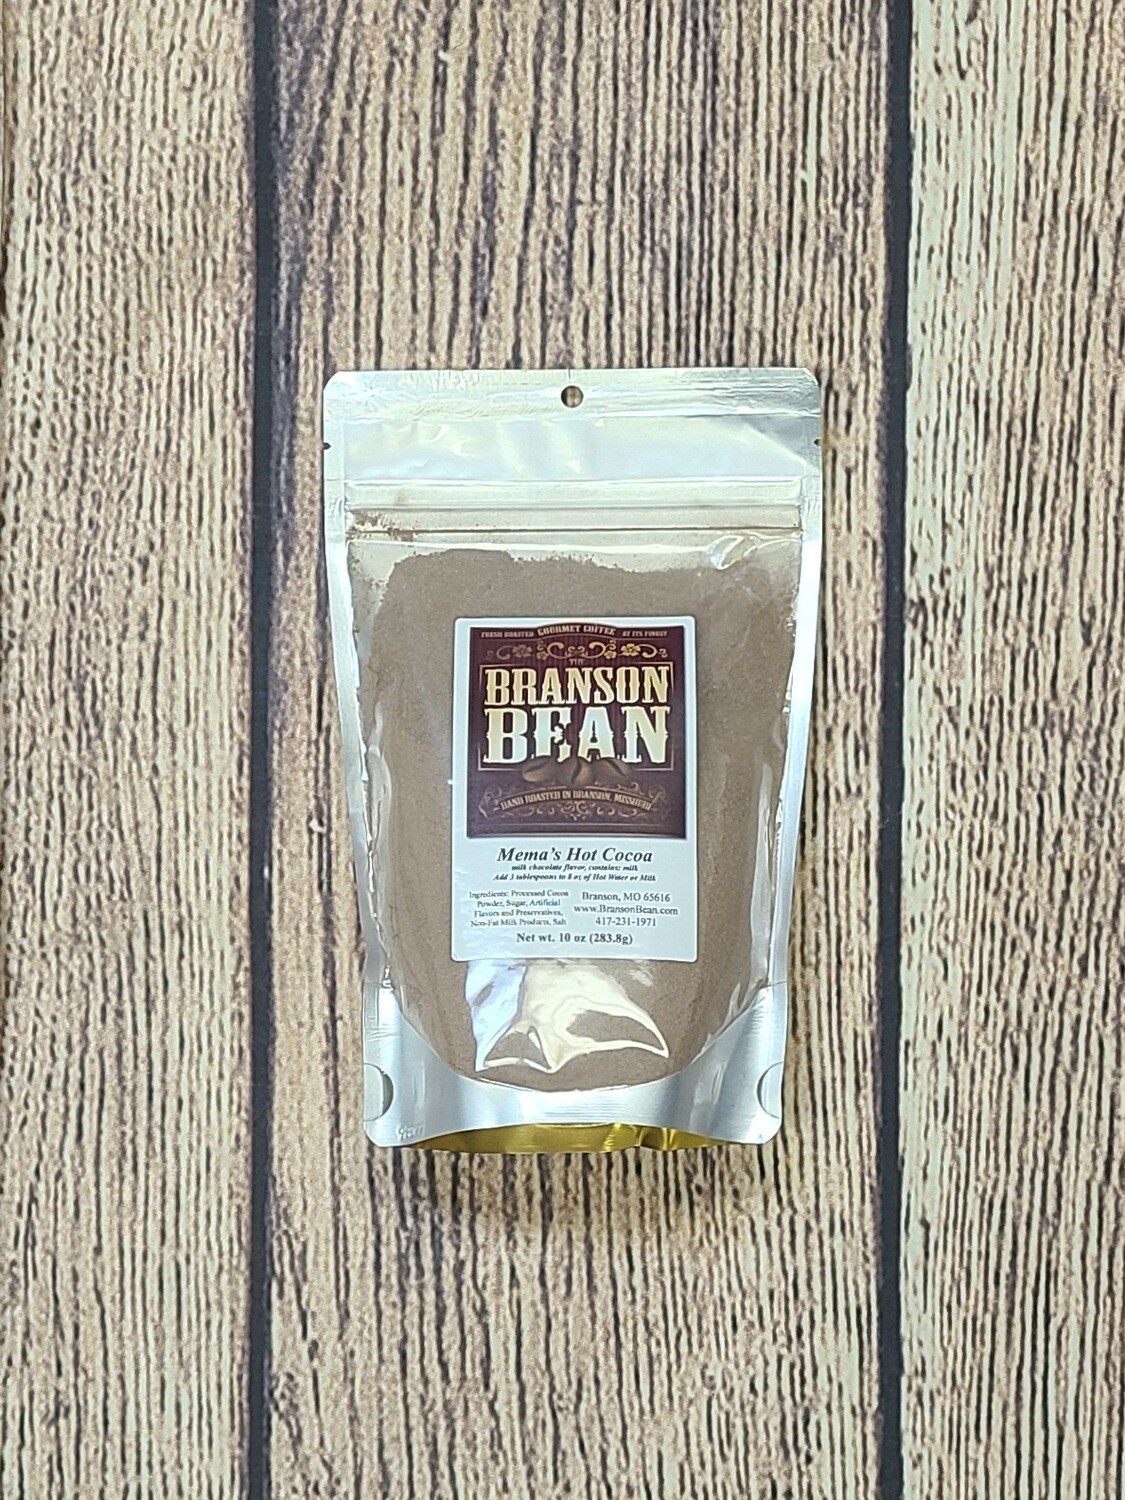 Branson Bean - Mama's Hot Chocolate